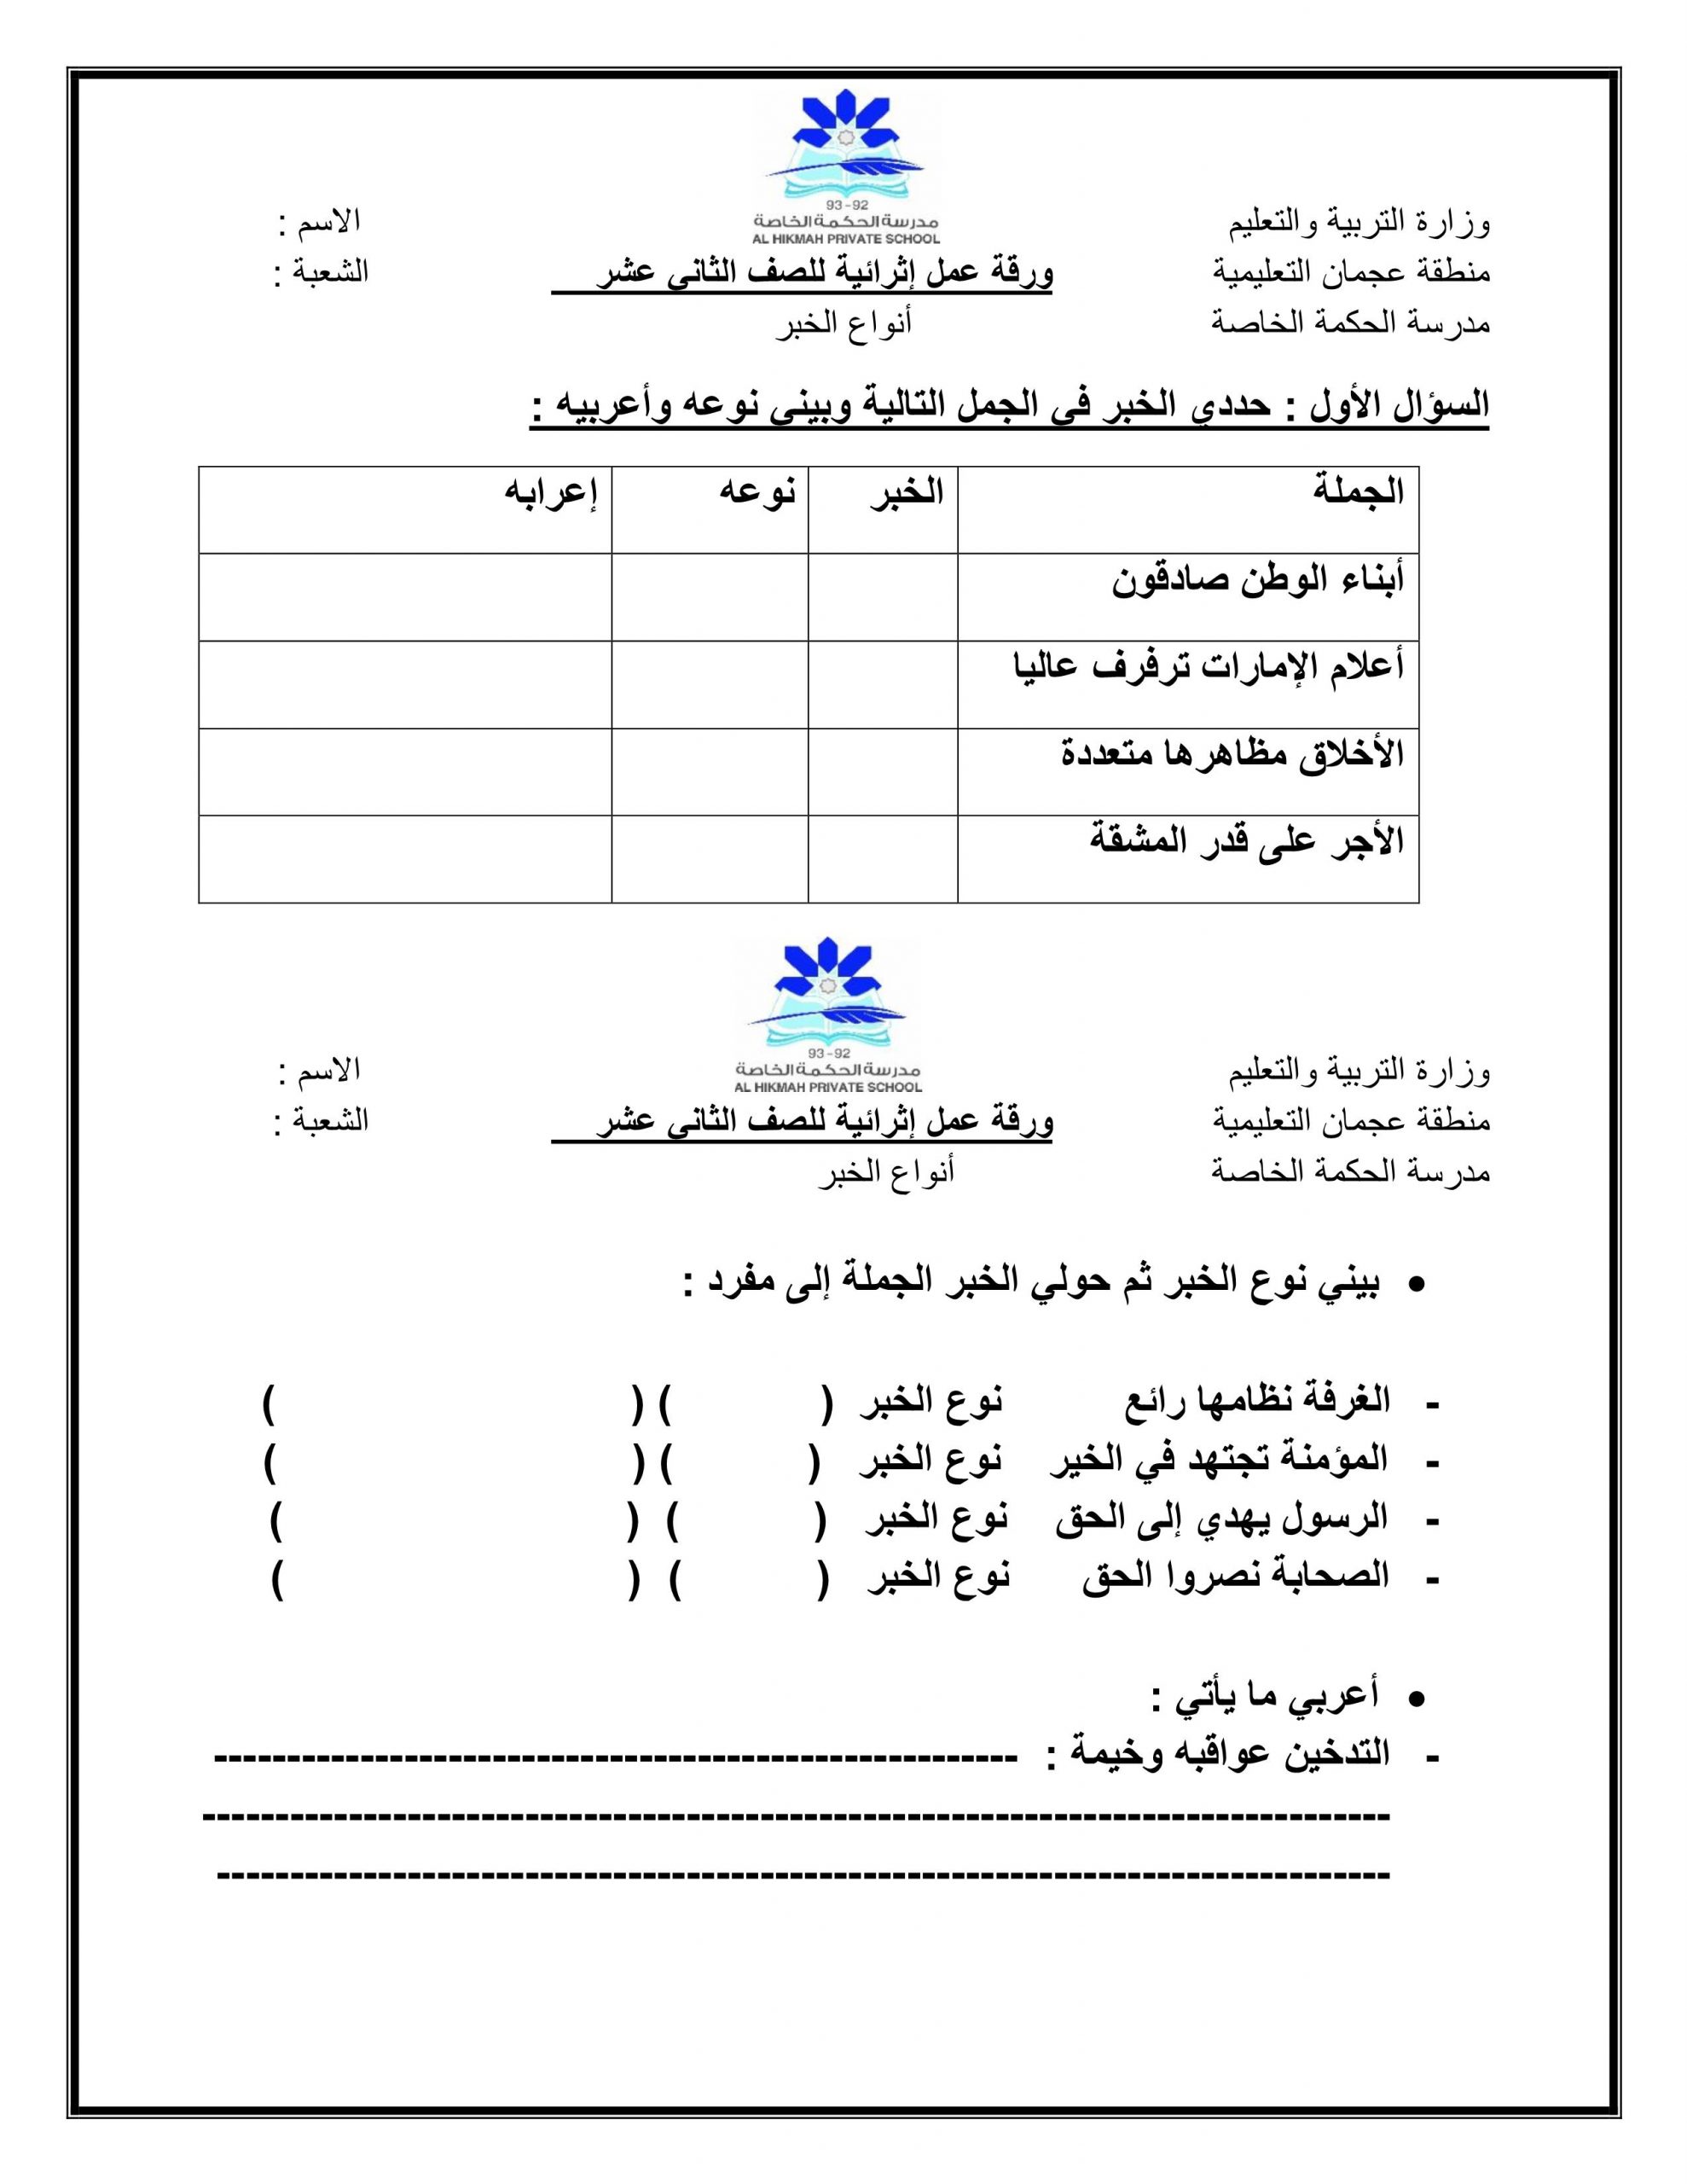 ورقة عمل إثرائية أنواع الخبر الصف الثاني عشر مادة اللغة العربية 